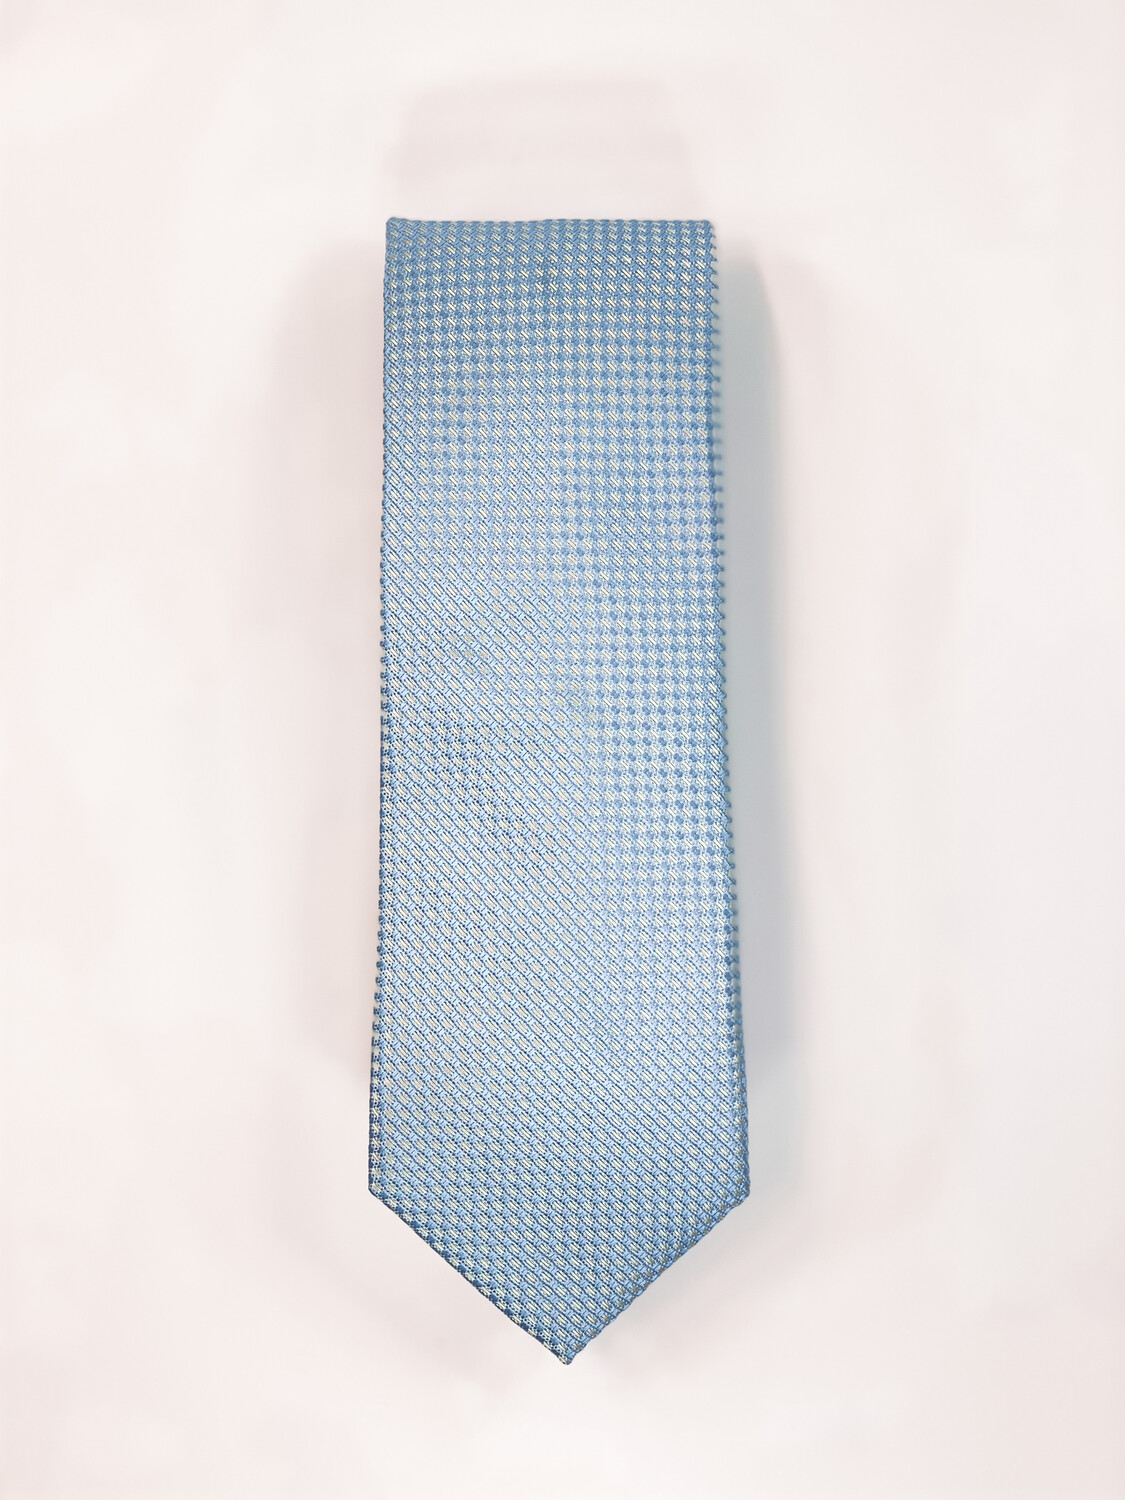 Cravate Bleu 2 tons